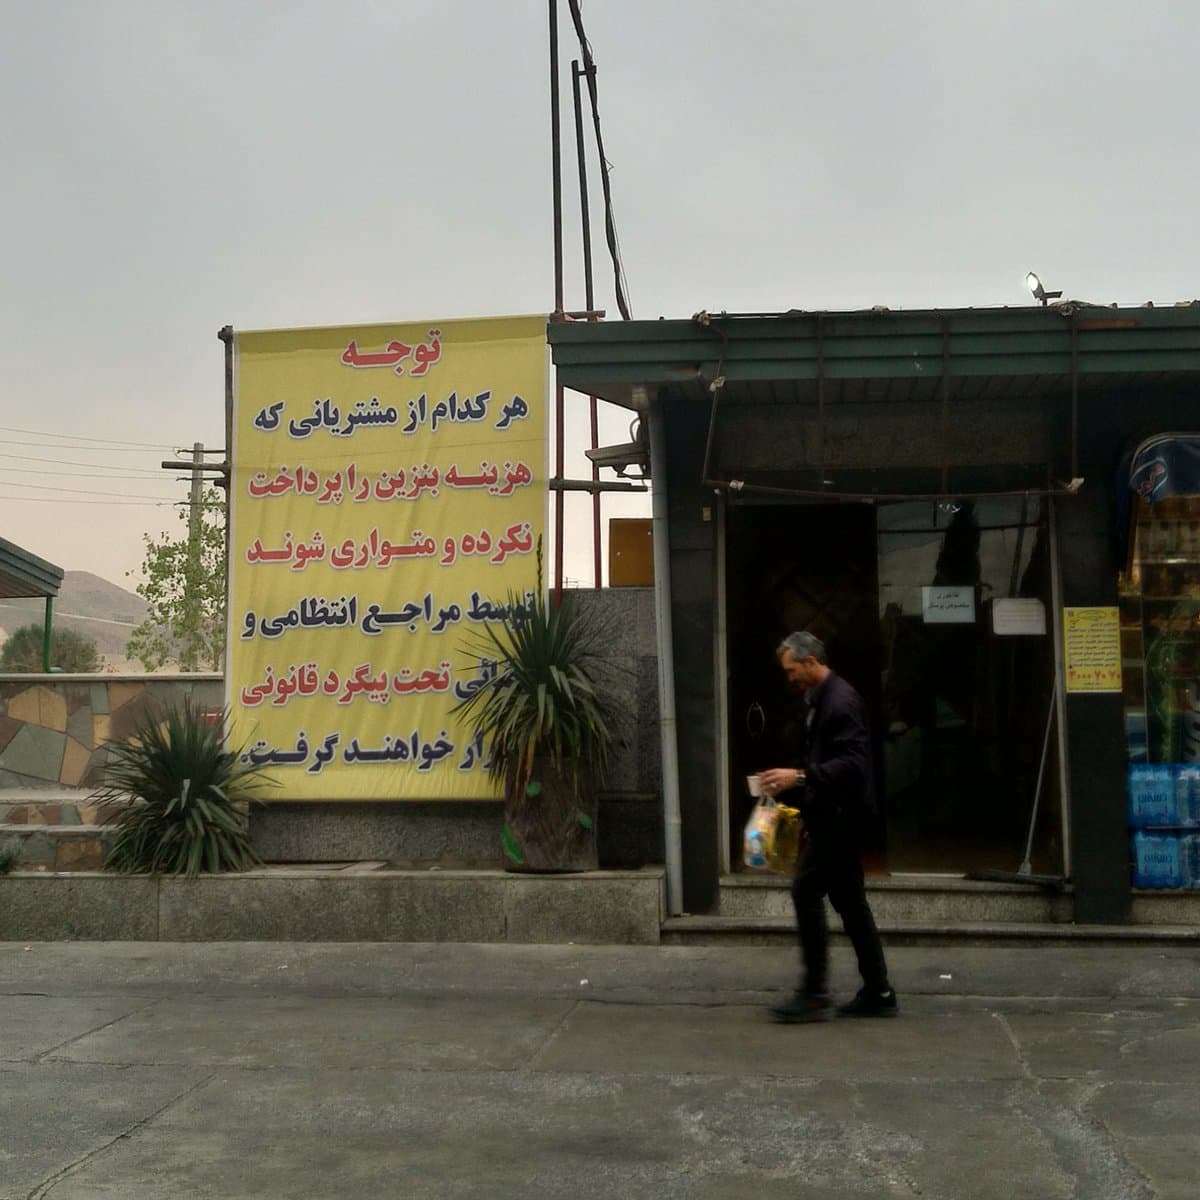 پلاکارد عجیب در پمپ بنزین های تهران+عکس